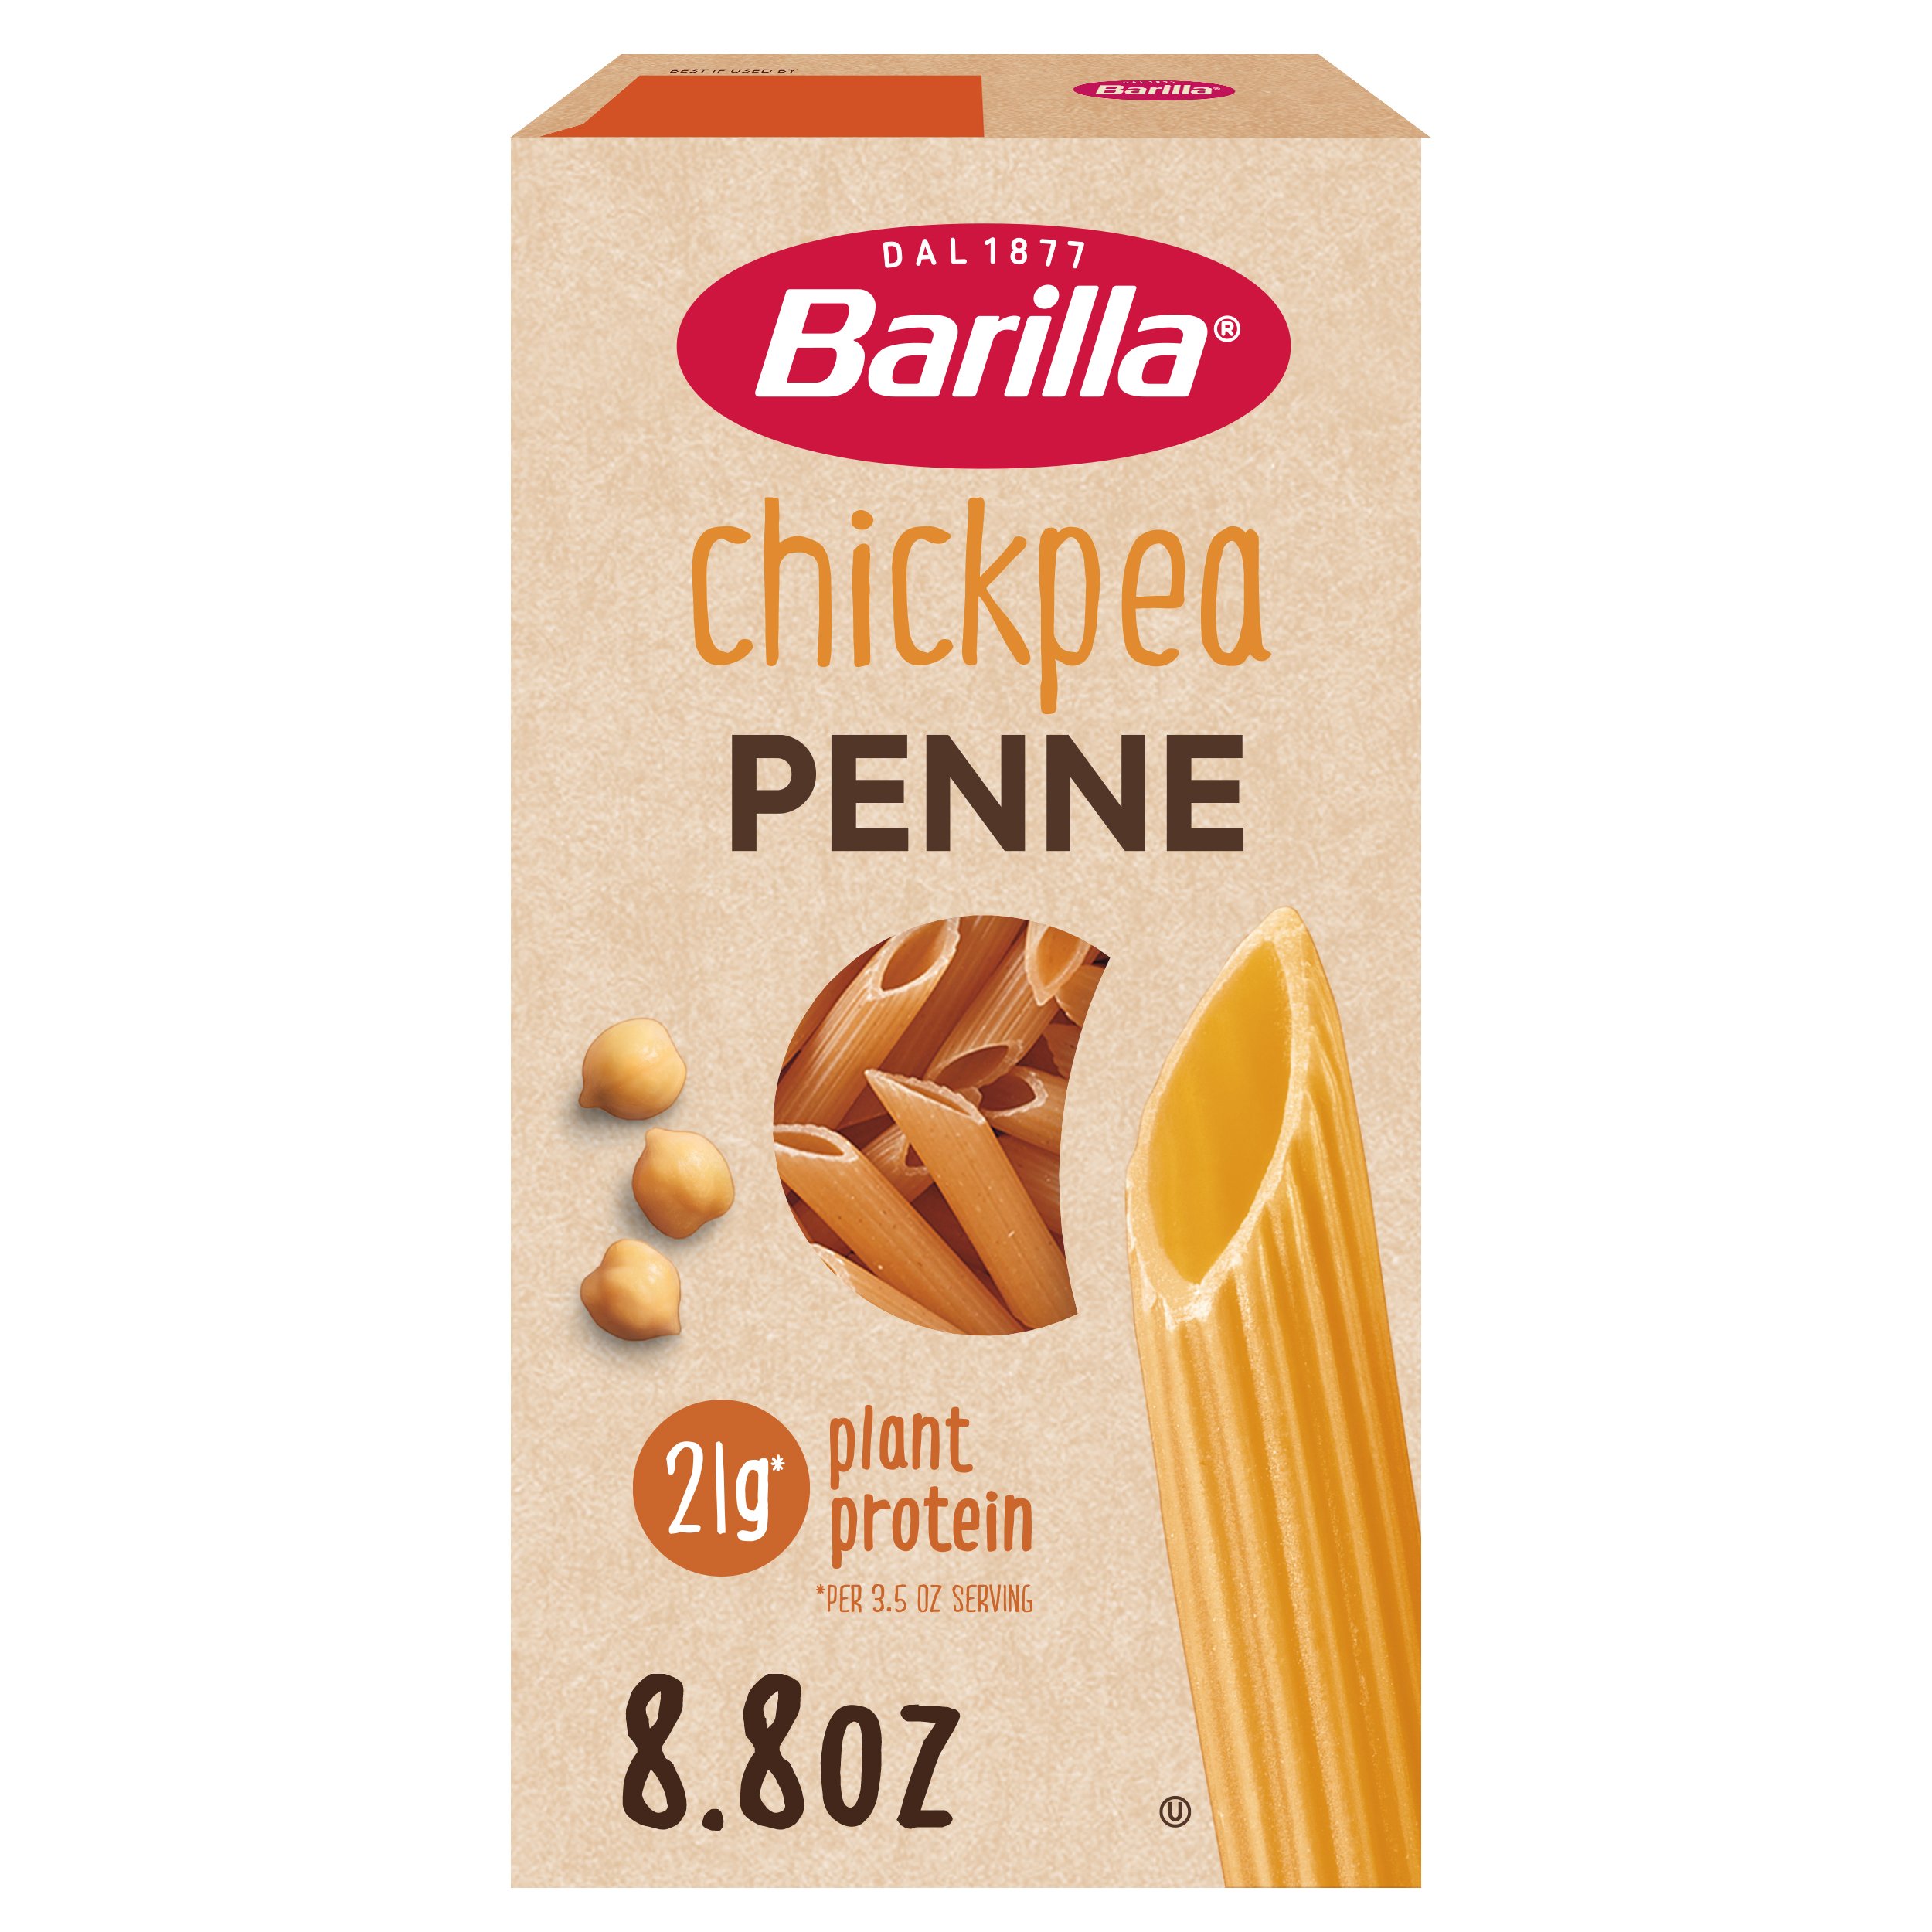 Barilla Chickpea Penne Pasta - Shop Pasta at H-E-B